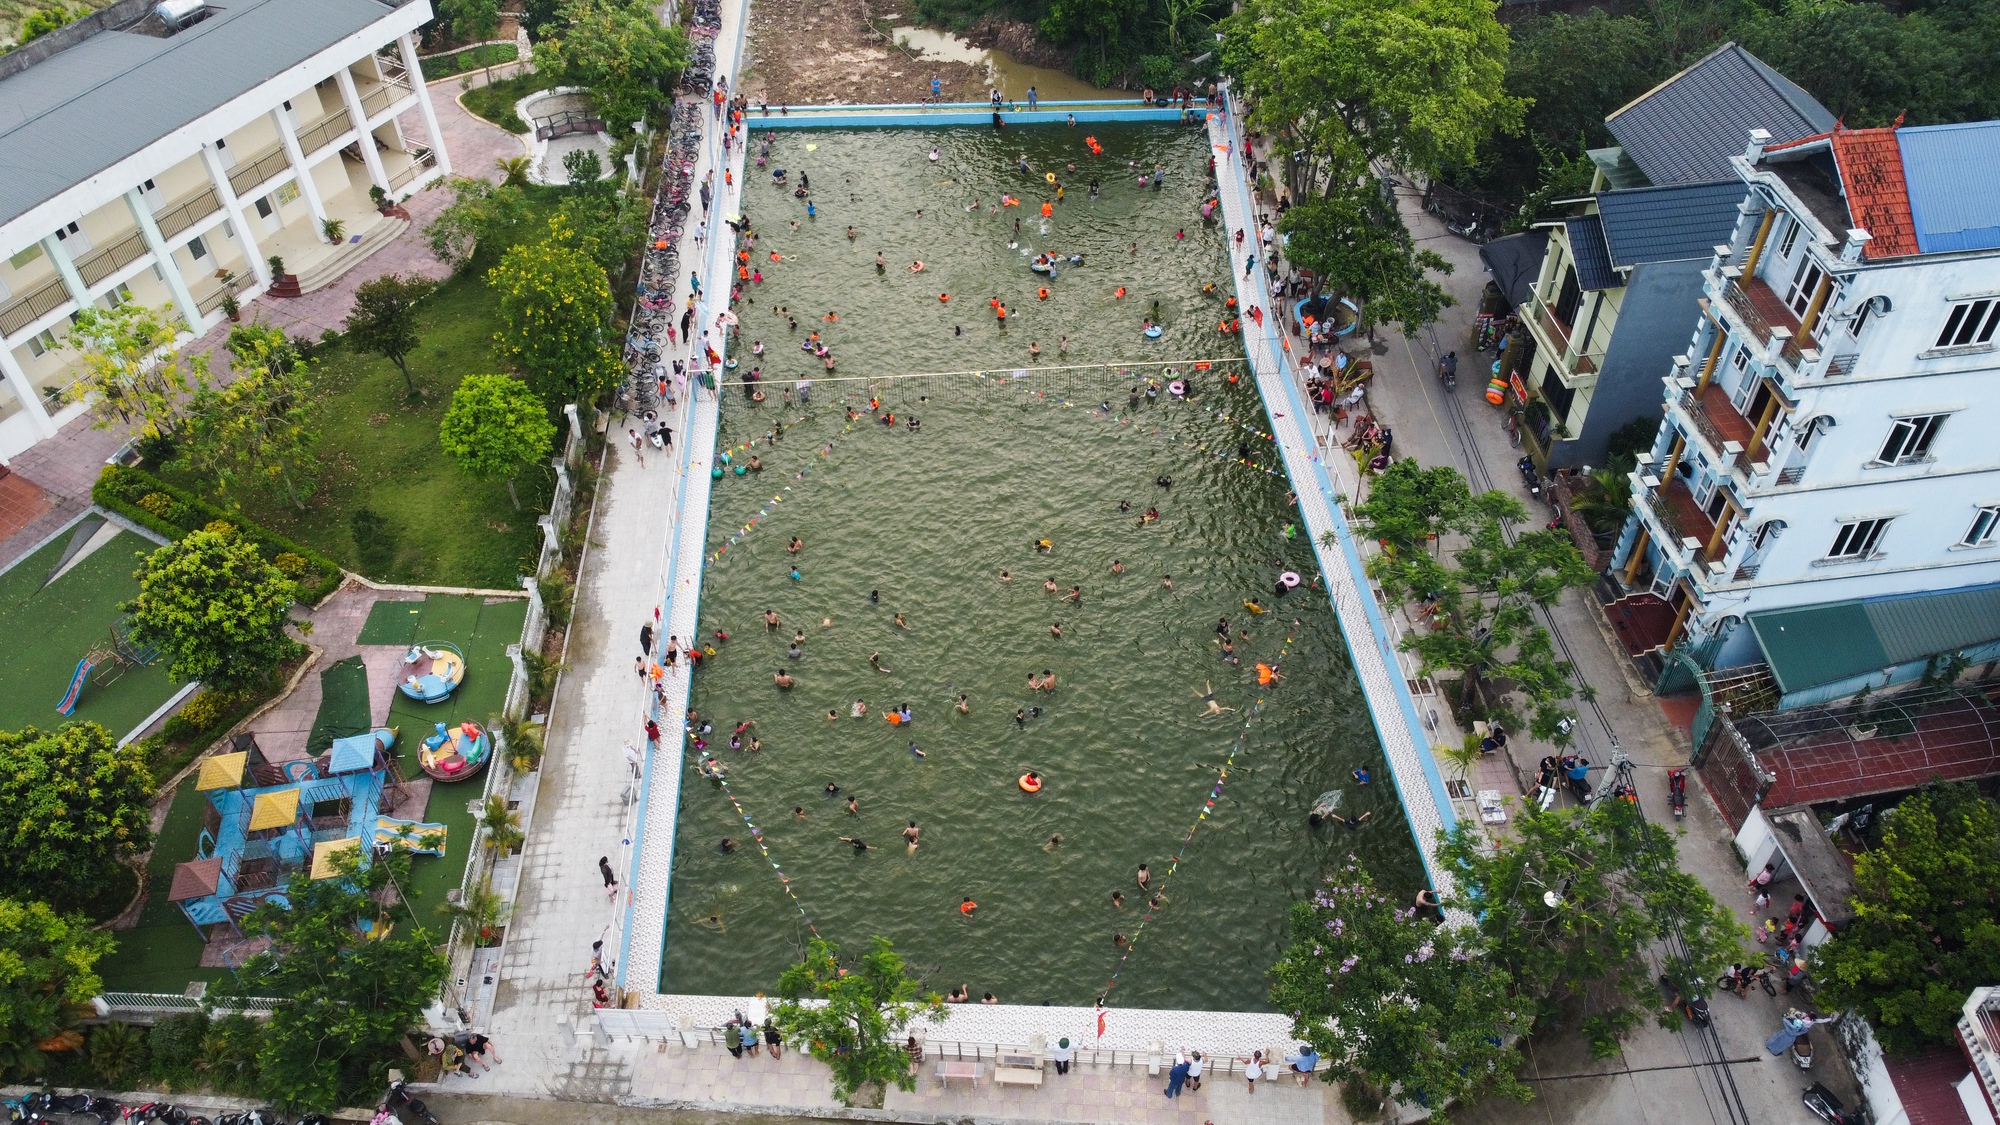 Biến ao làng thành bể bơi miễn phí, trẻ em thích thú tắm giải nhiệt ngày nắng nóng - Ảnh 2.